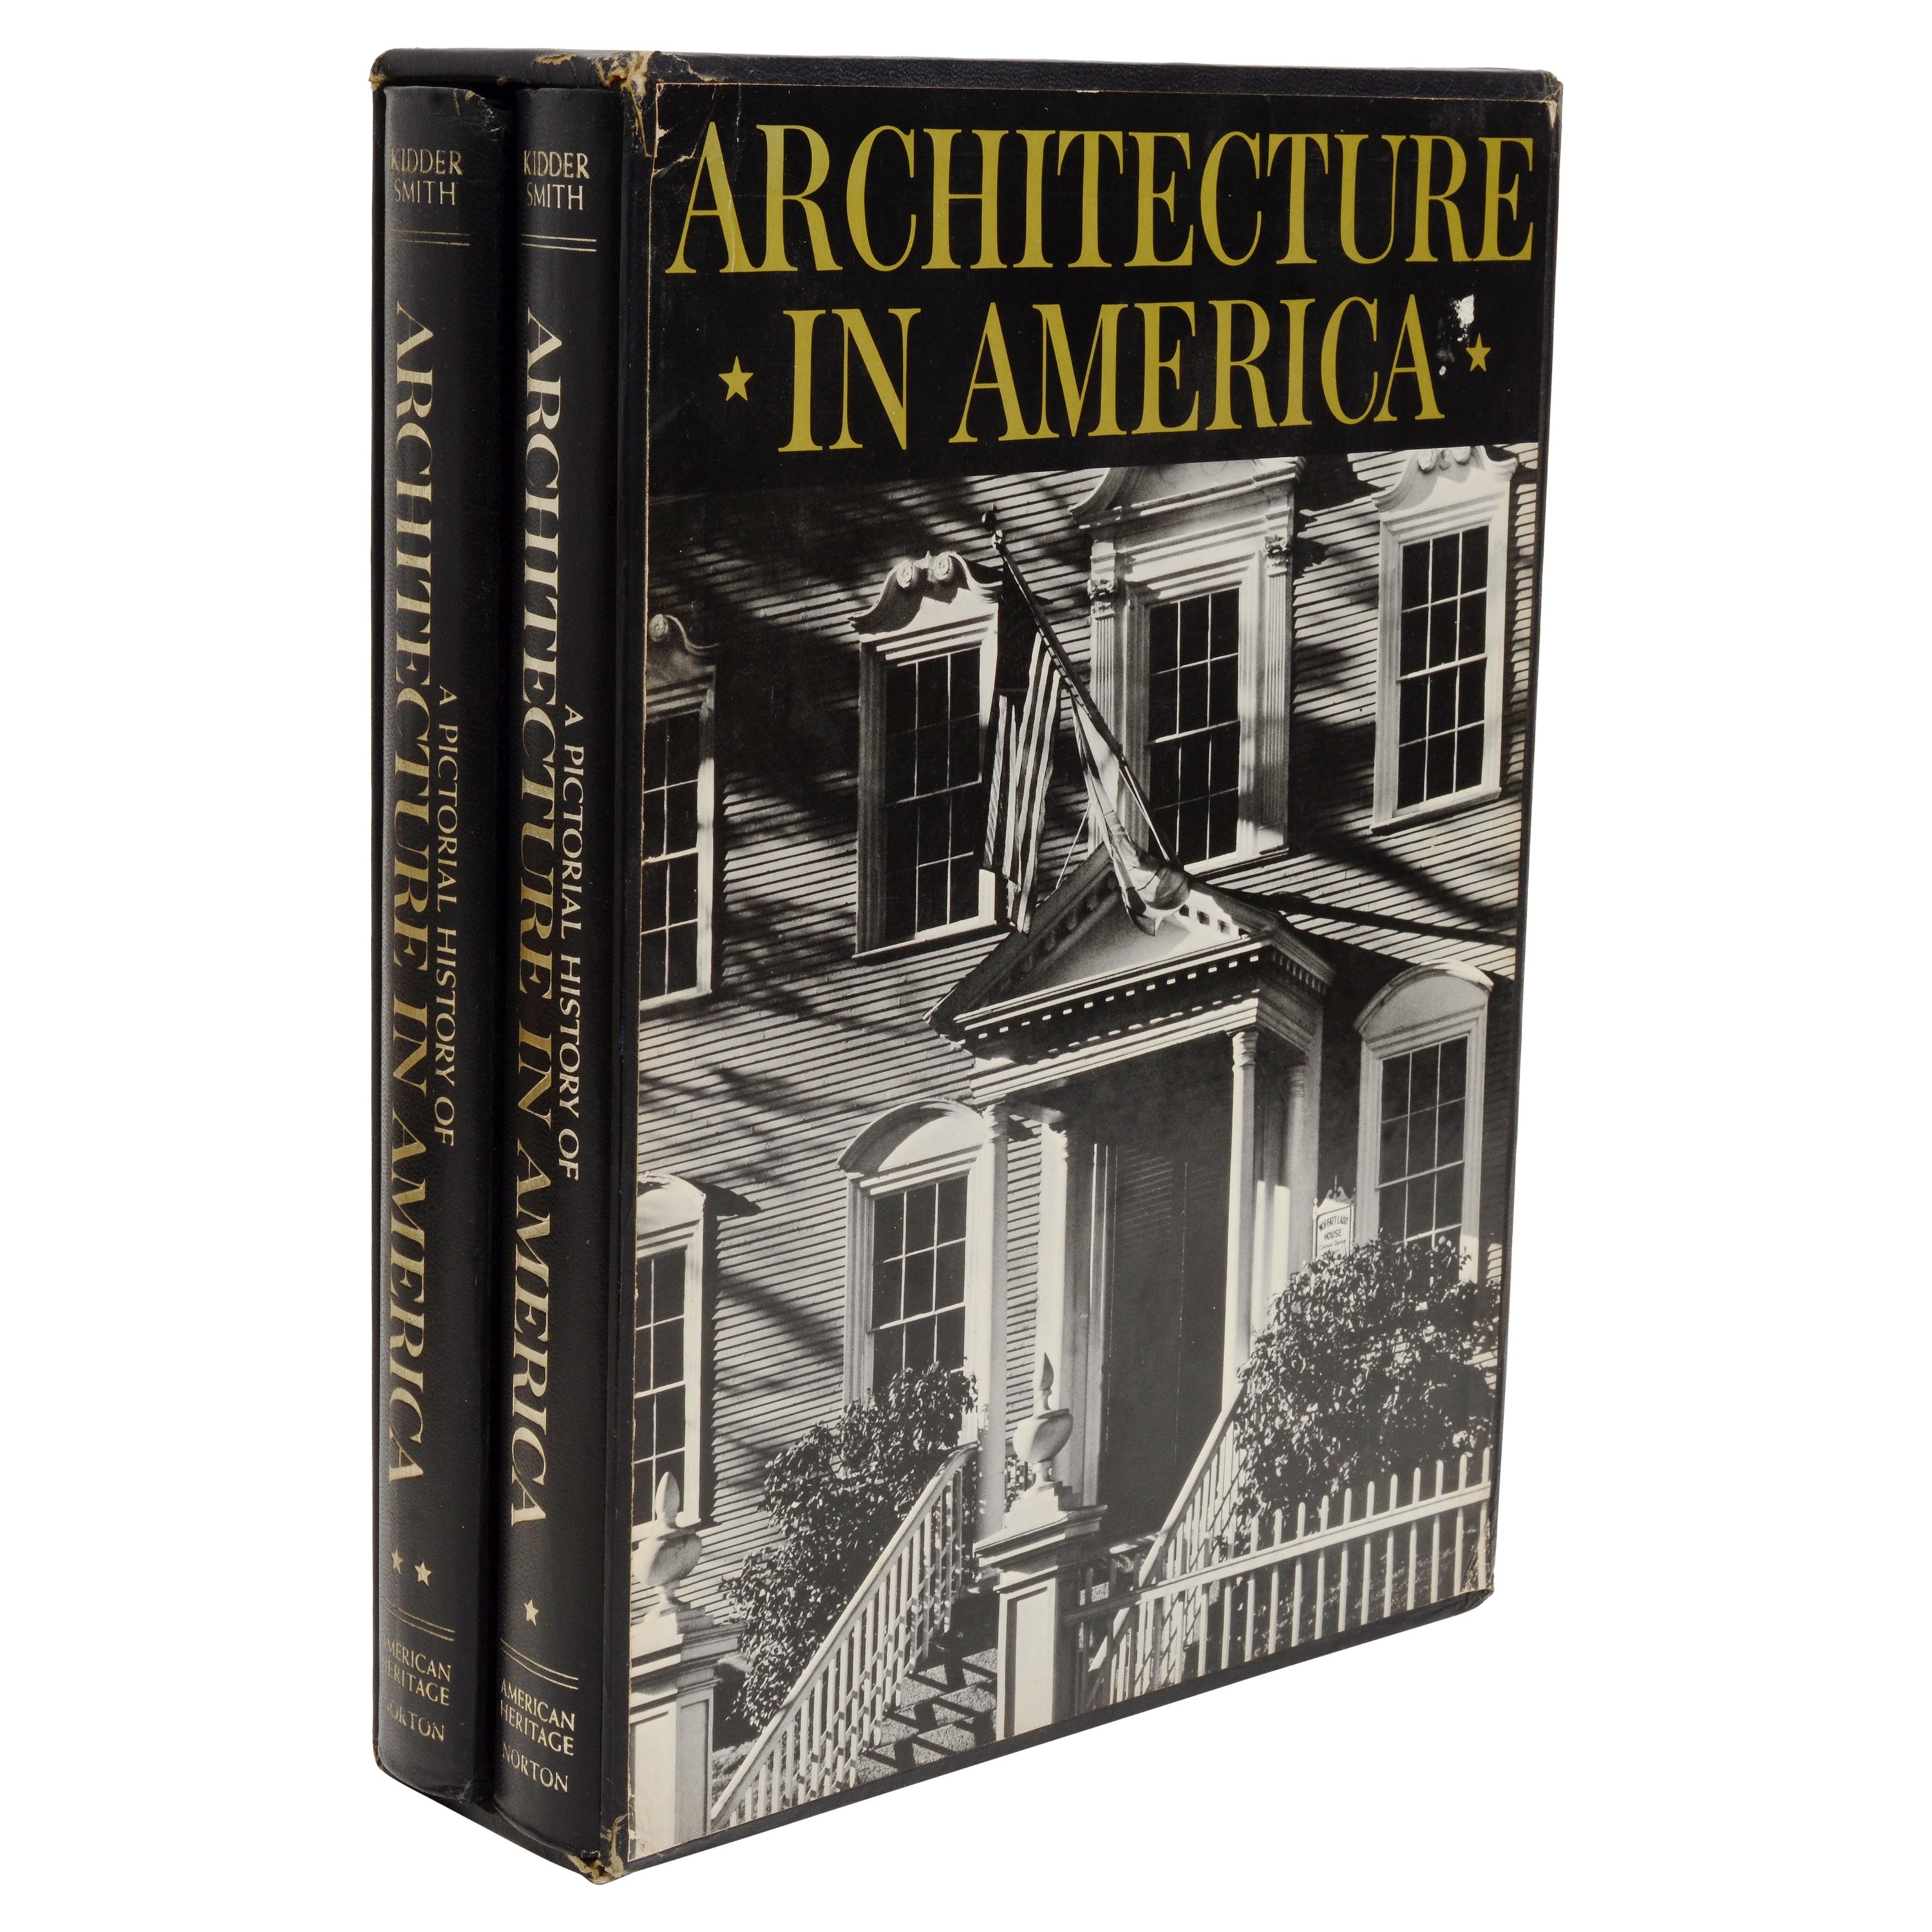 L'histoire picturale de l'architecture en Amérique par G. E. Kidder Smith, 1ère édition en vente